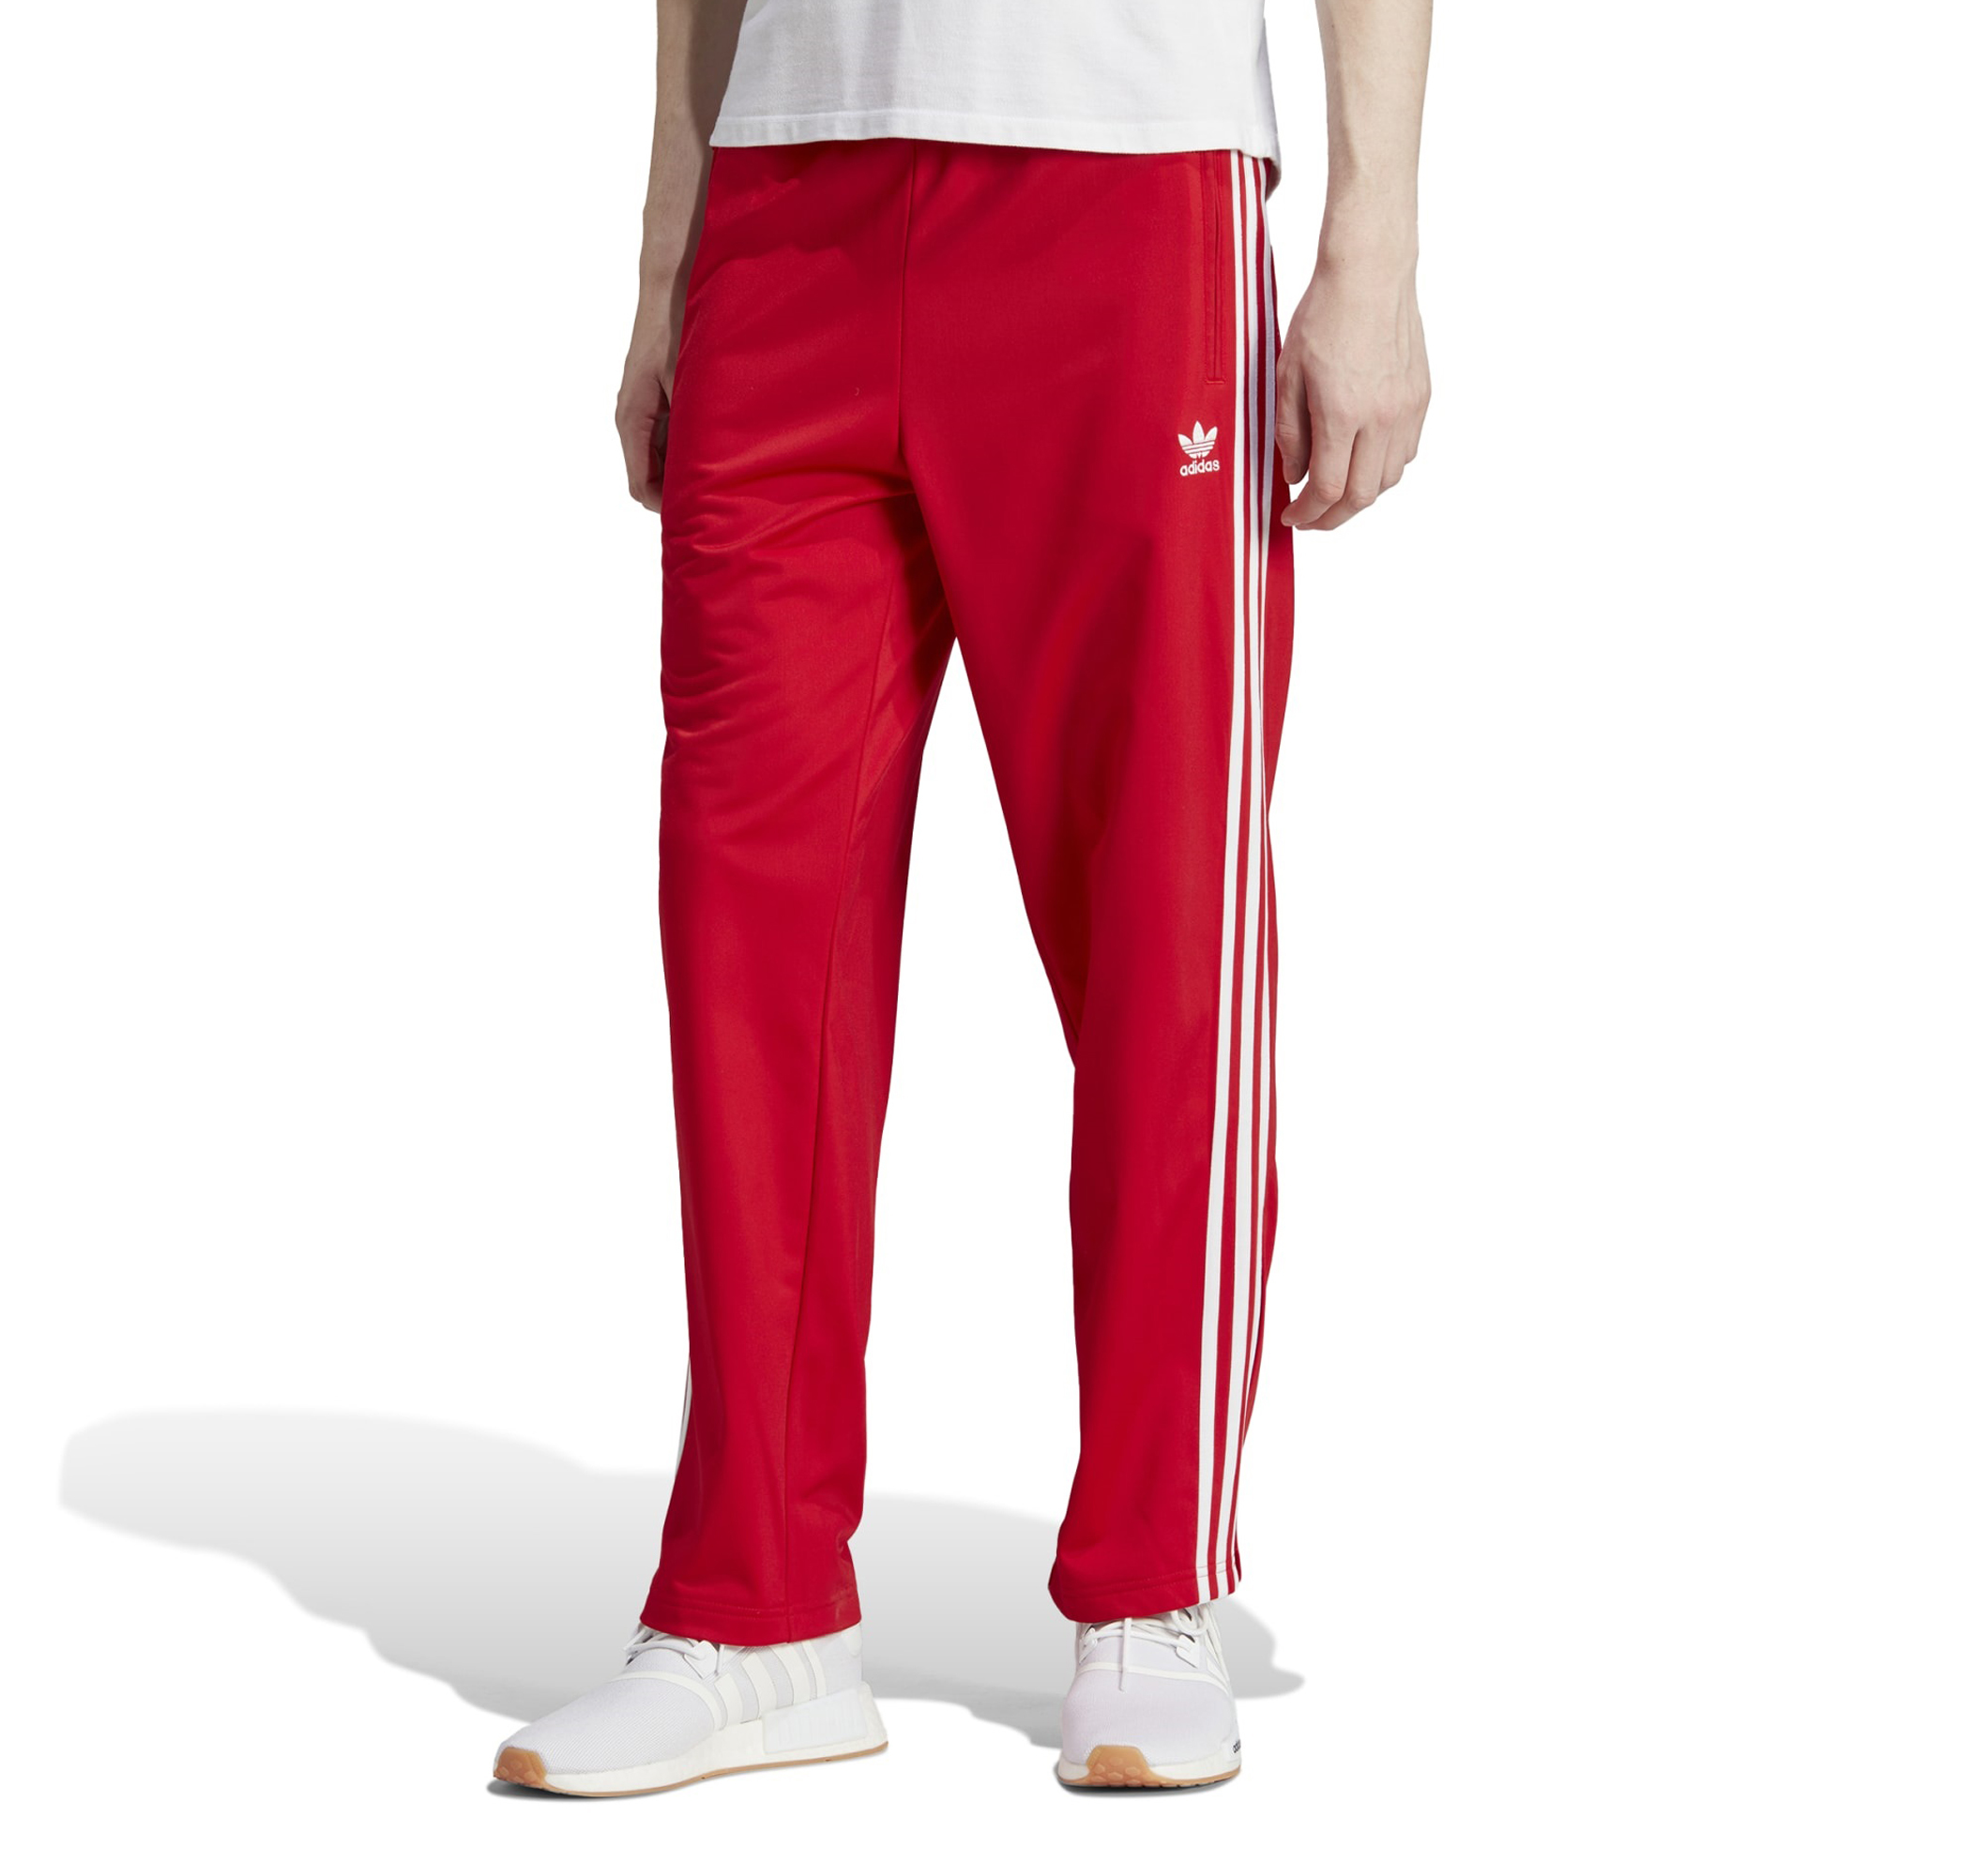 Мужские спортивные штаны adidas Firebird Tp